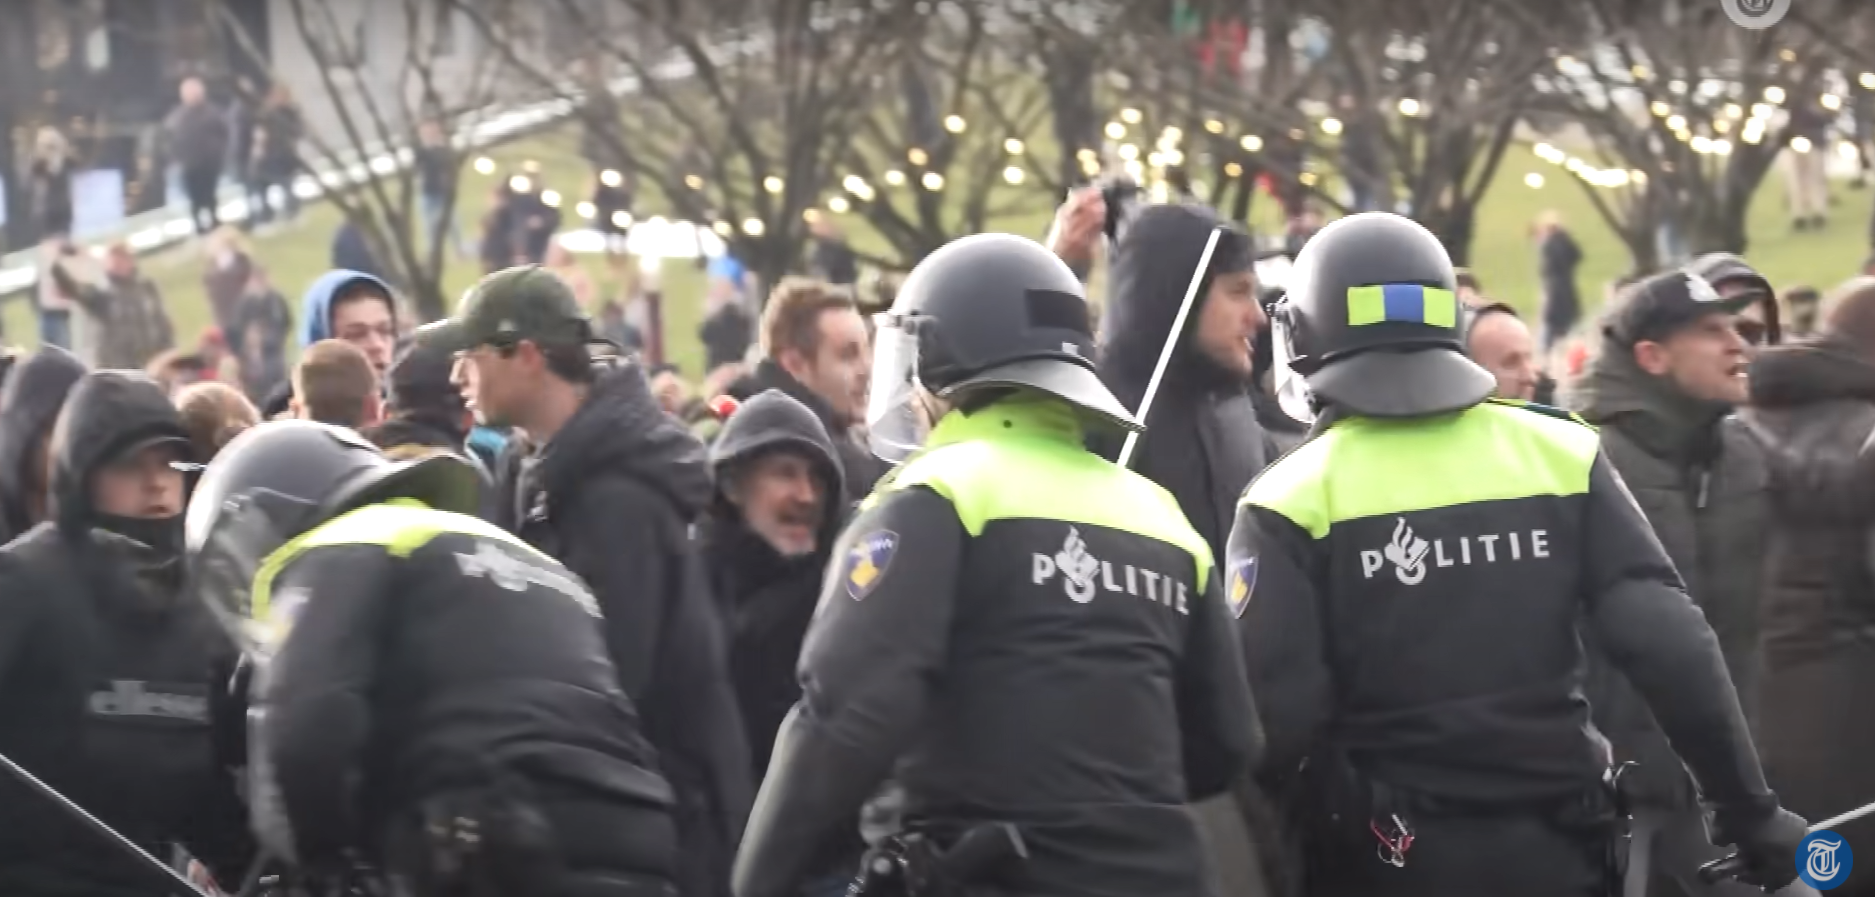 Peste 100 de persoane, arestate în urma unor proteste violente anti-Covid în Amsterdam. VIDEO